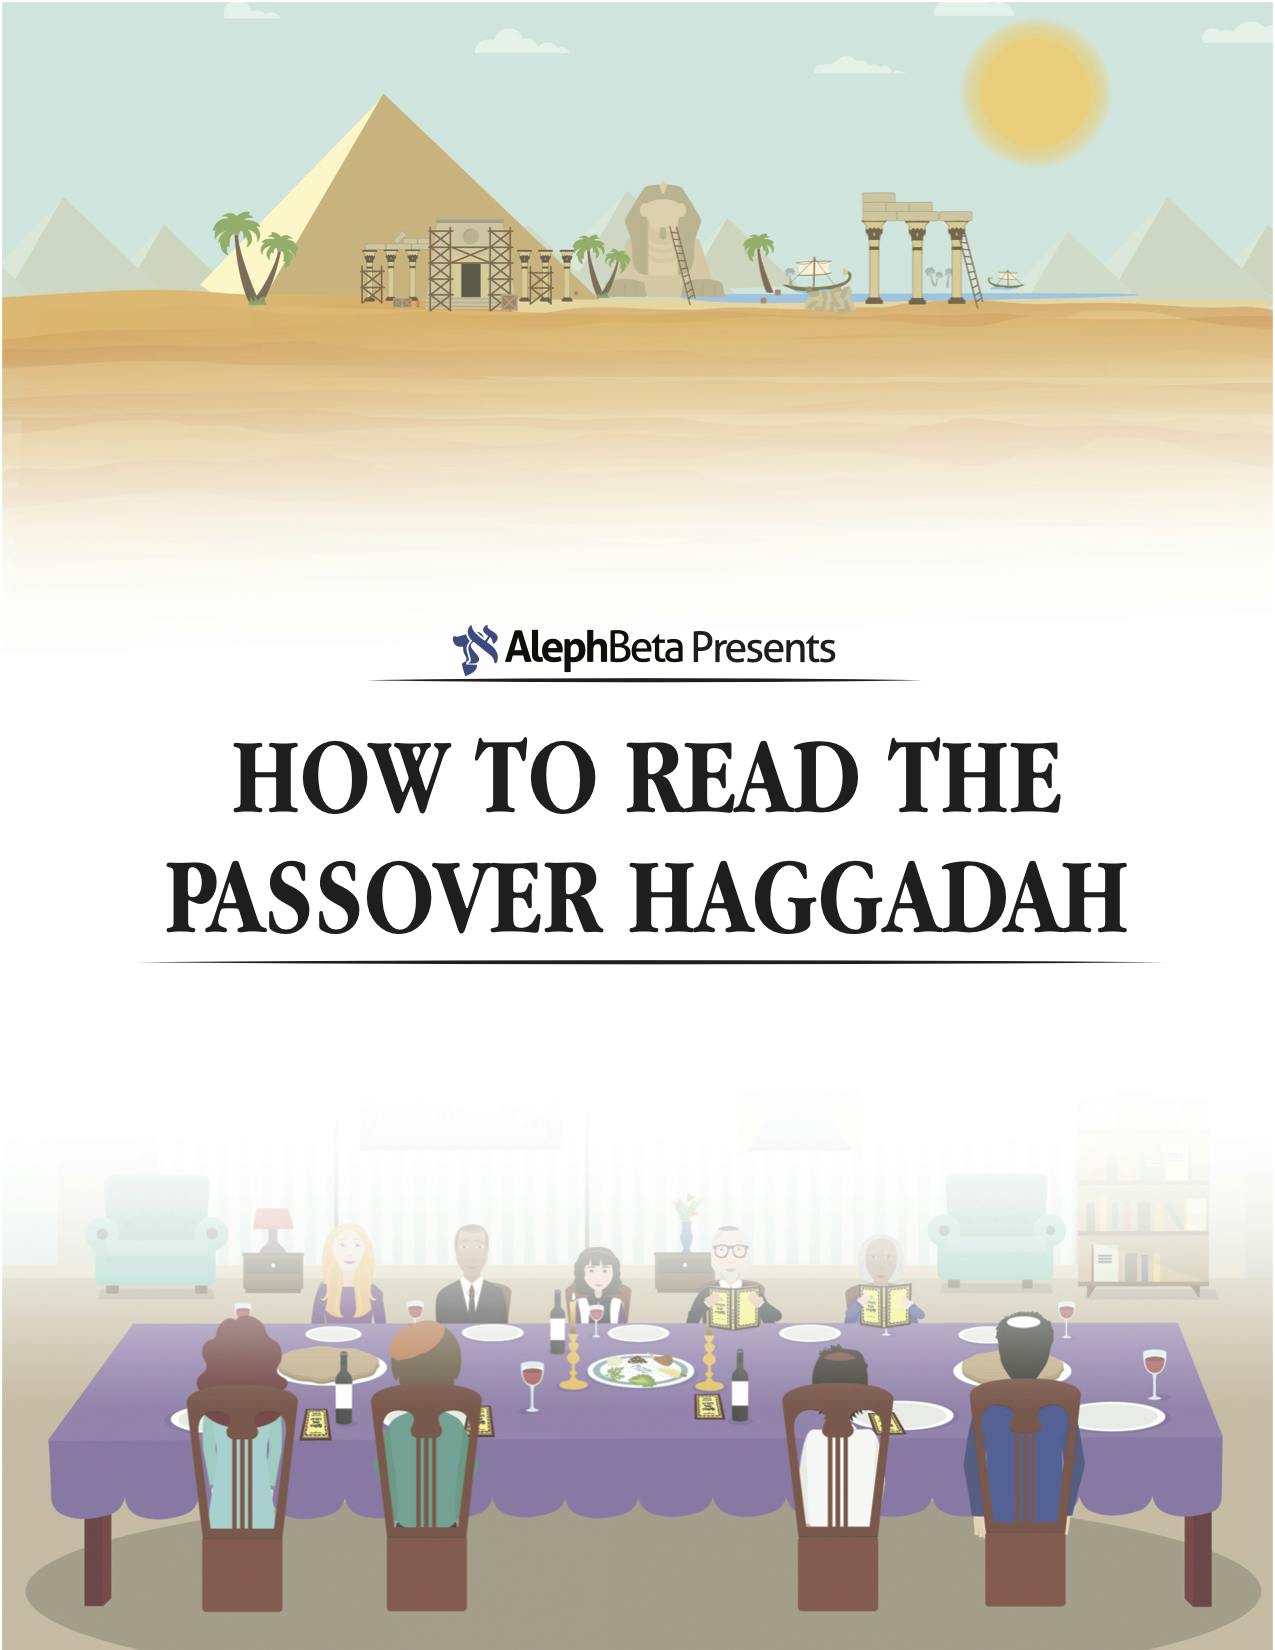 Printable passover pdf